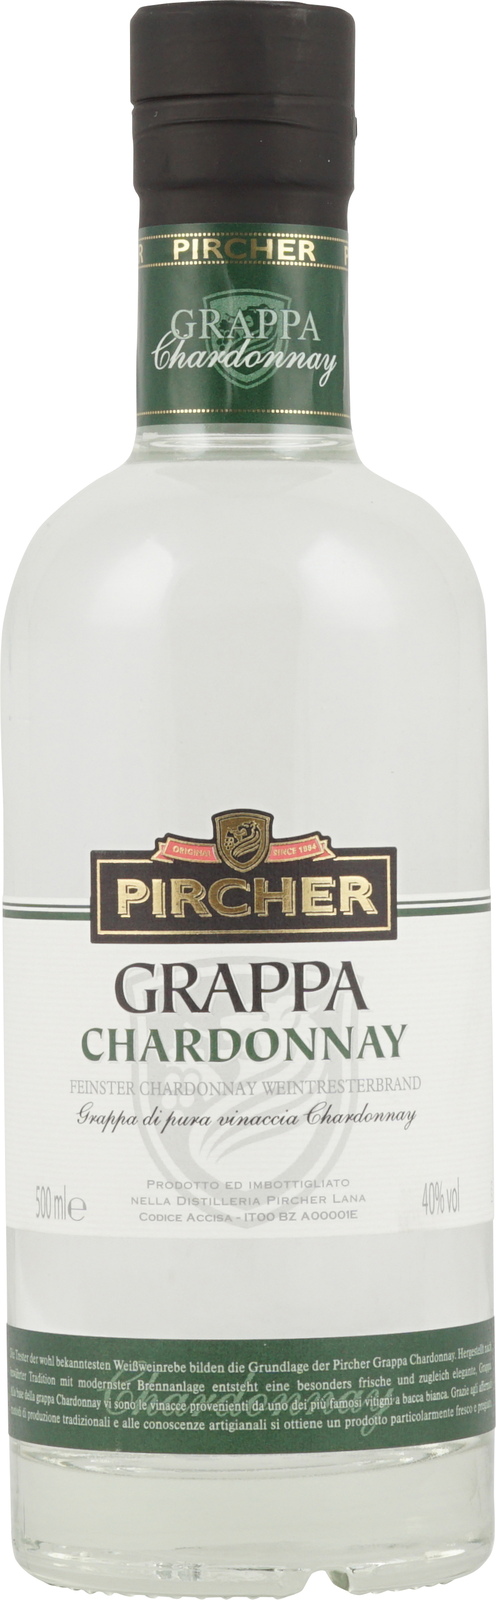 Pircher Grappa Chardonnay in 500 Flasche mit 40% ml Vol